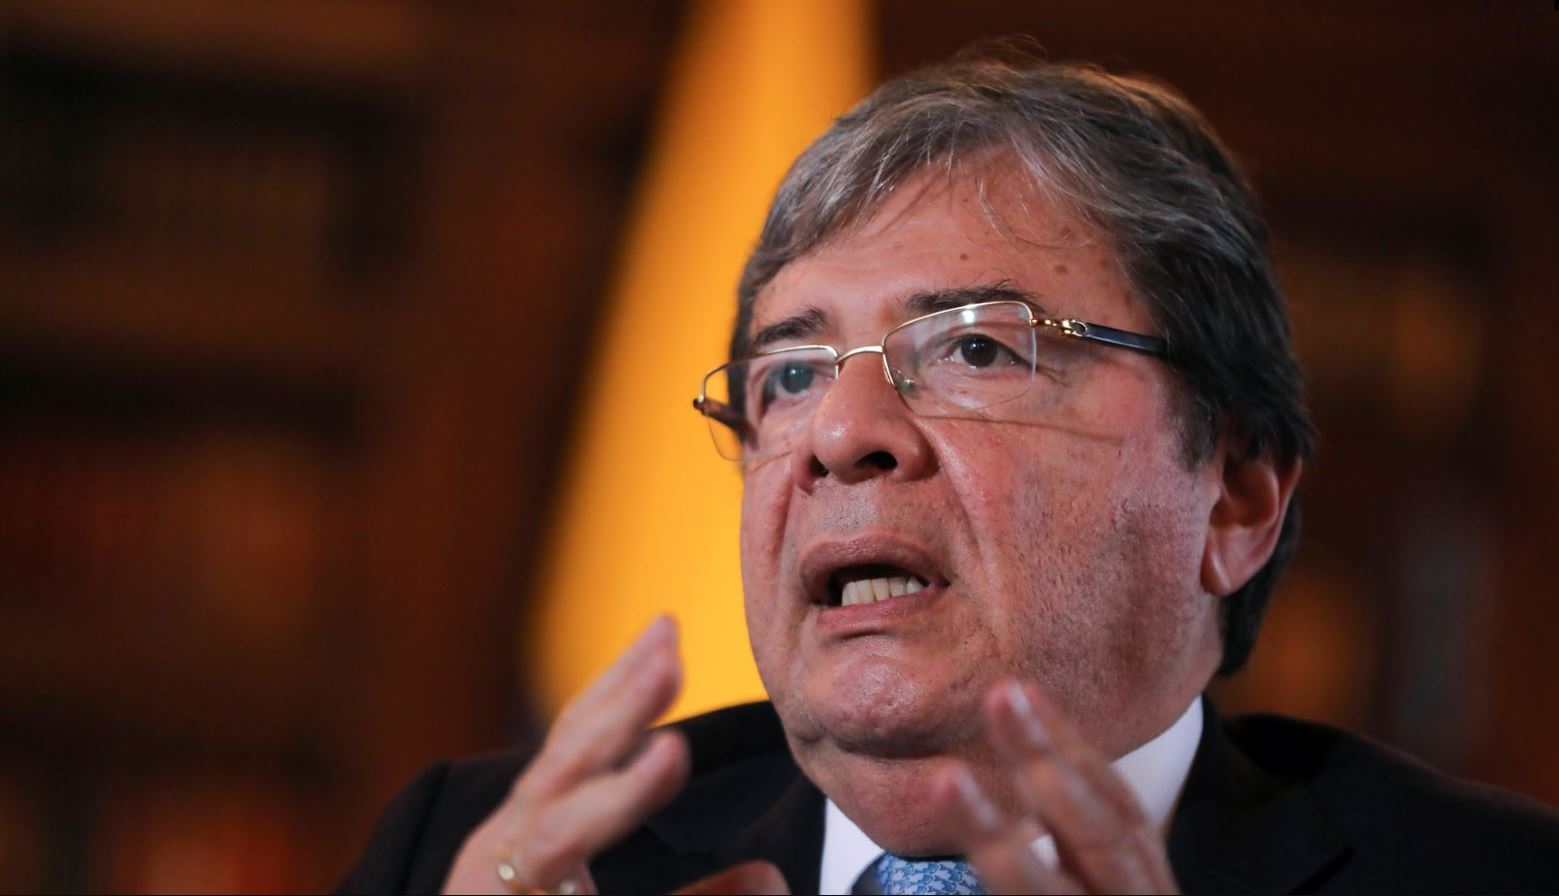 Canciller Holmes Trujillo expondrá ante la OEA los desafíos del narcoterrorismo a la democracia (VIDEO)